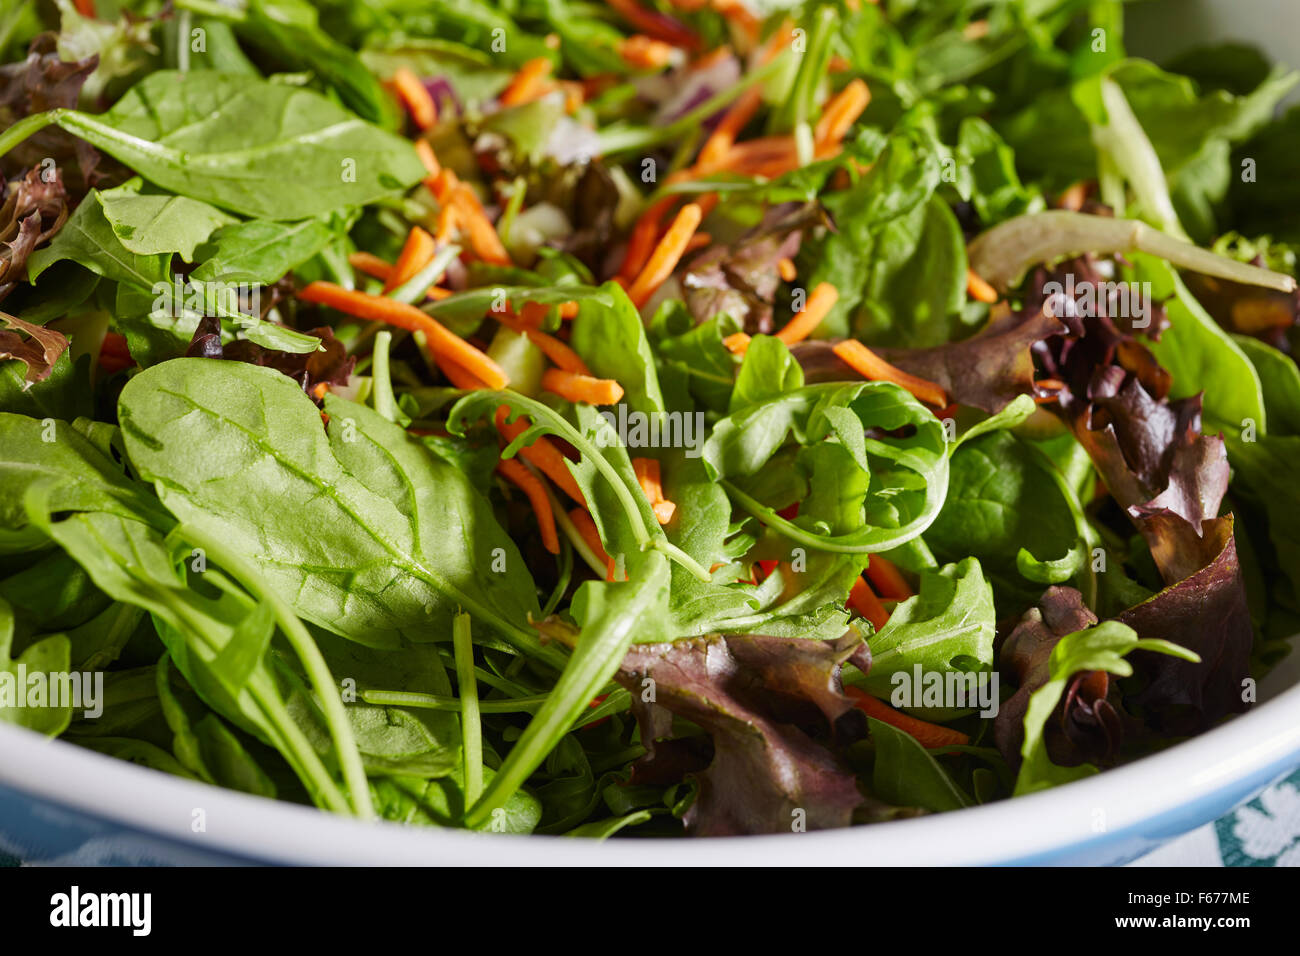 Mixed green salad Stock Photo